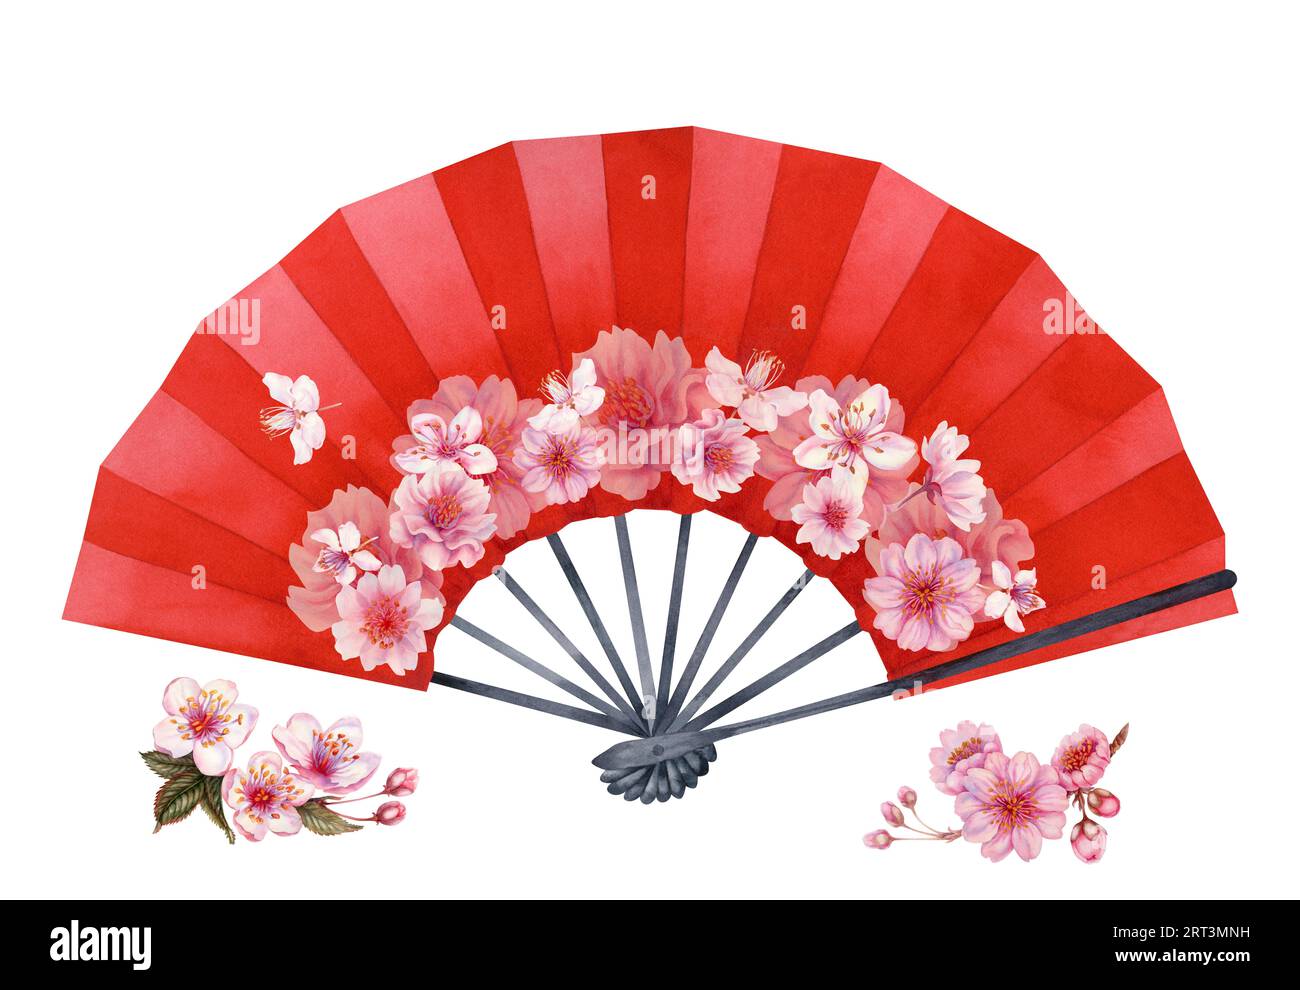 Illustrazione ad acquerello di un ventilatore a mano di carta aperto rosso con fiori di ciliegio. Elemento isolato su sfondo bianco Foto Stock